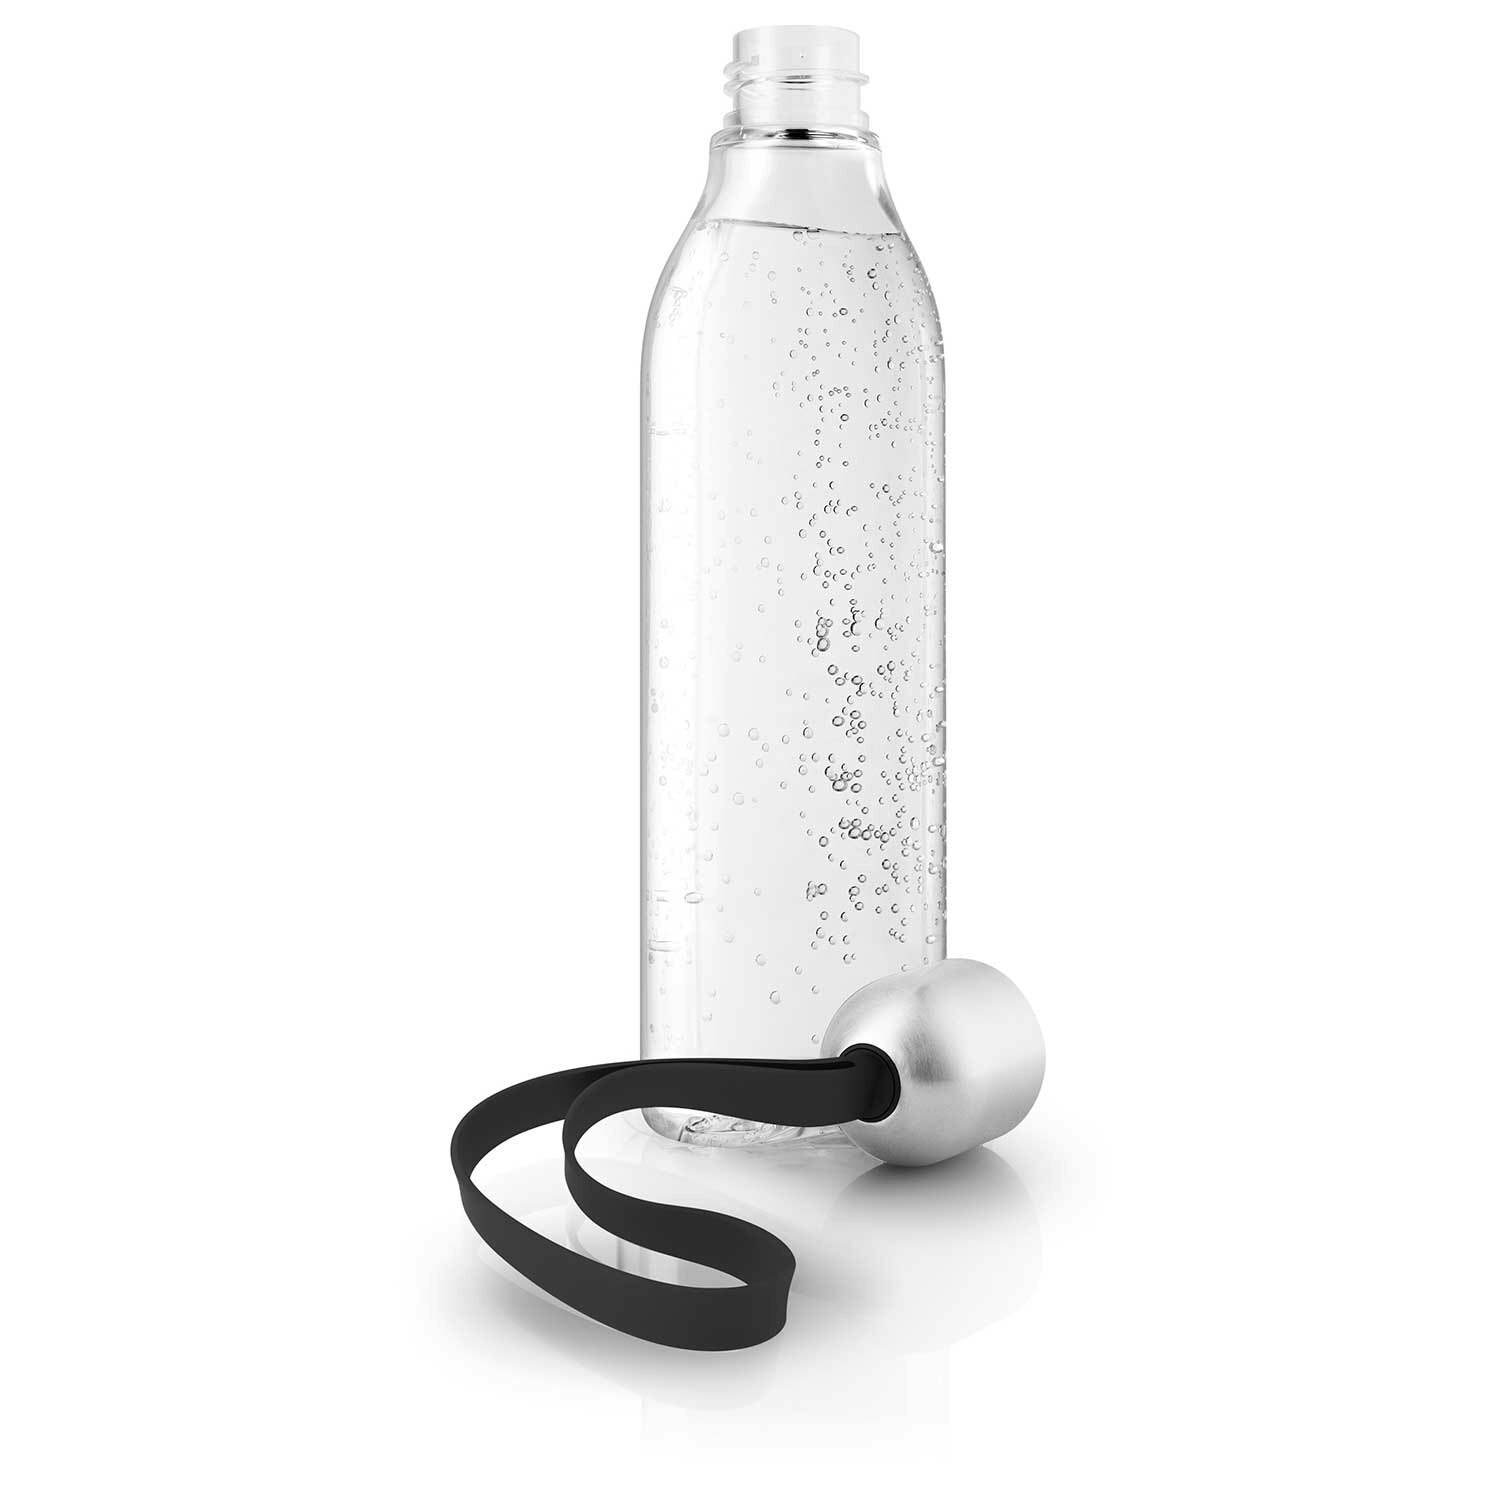 https://royaldesign.com/image/2/eva-solo-backpack-drinking-bottle-50-cl-2